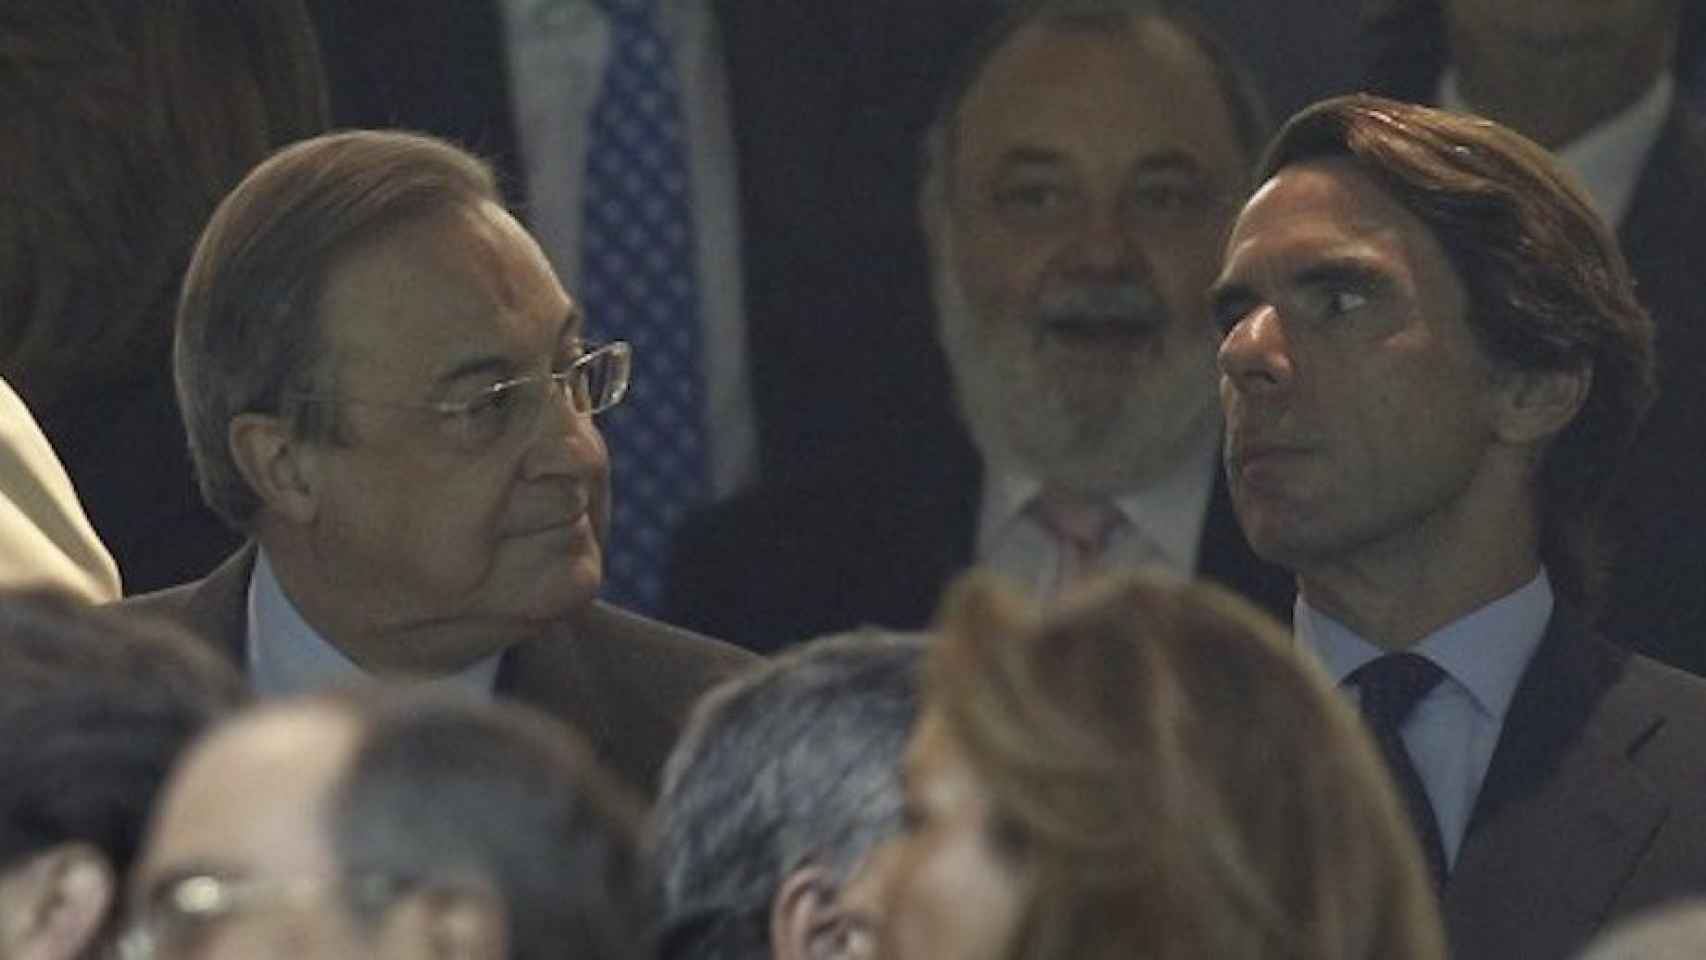 Una foto de archivo de Florentino Pérez y José María Aznar en el palco del Bernabéu / EFE